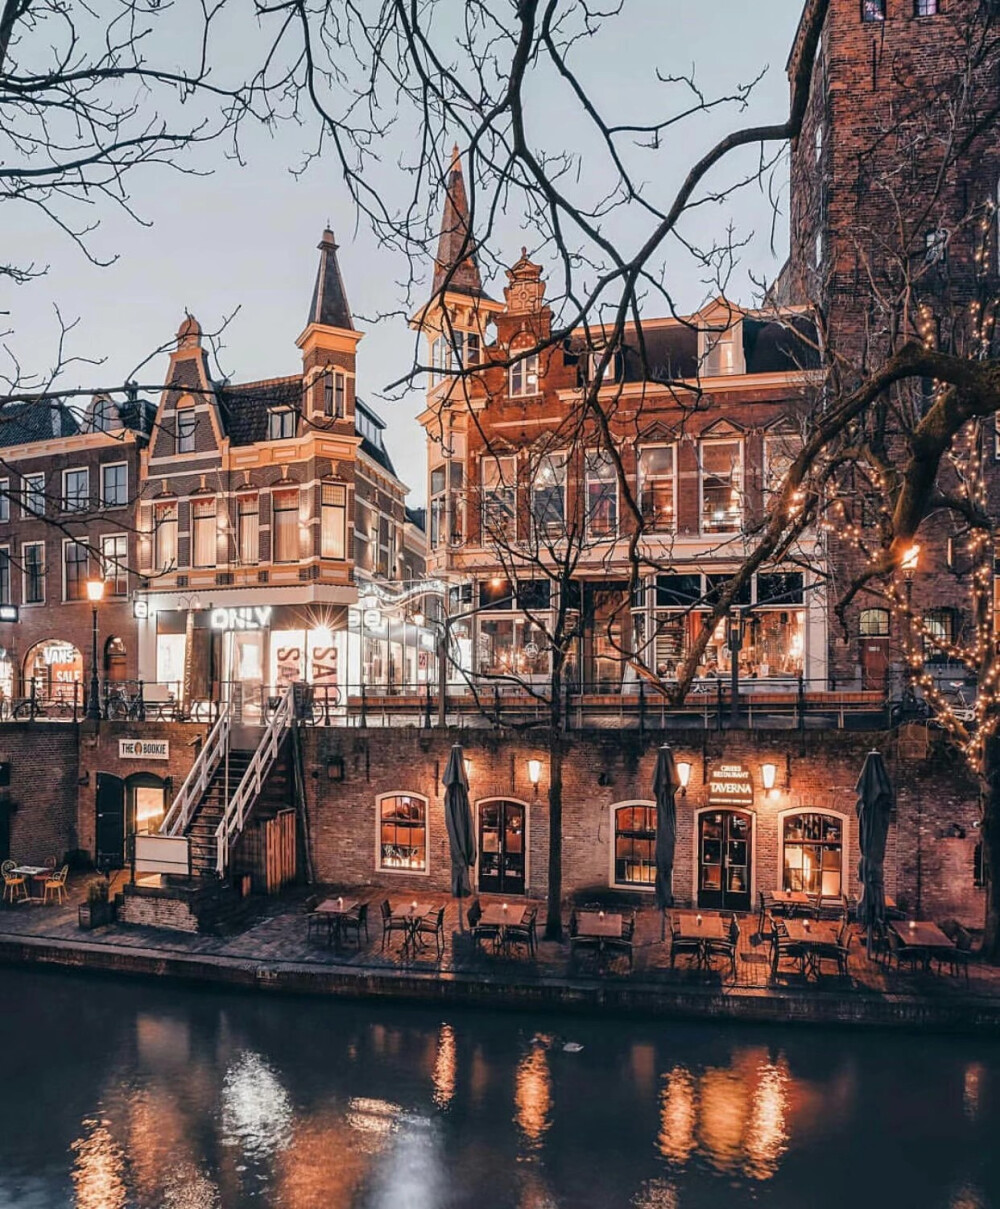 荷兰 | 傍晚的阿姆斯特丹
cr:全景志